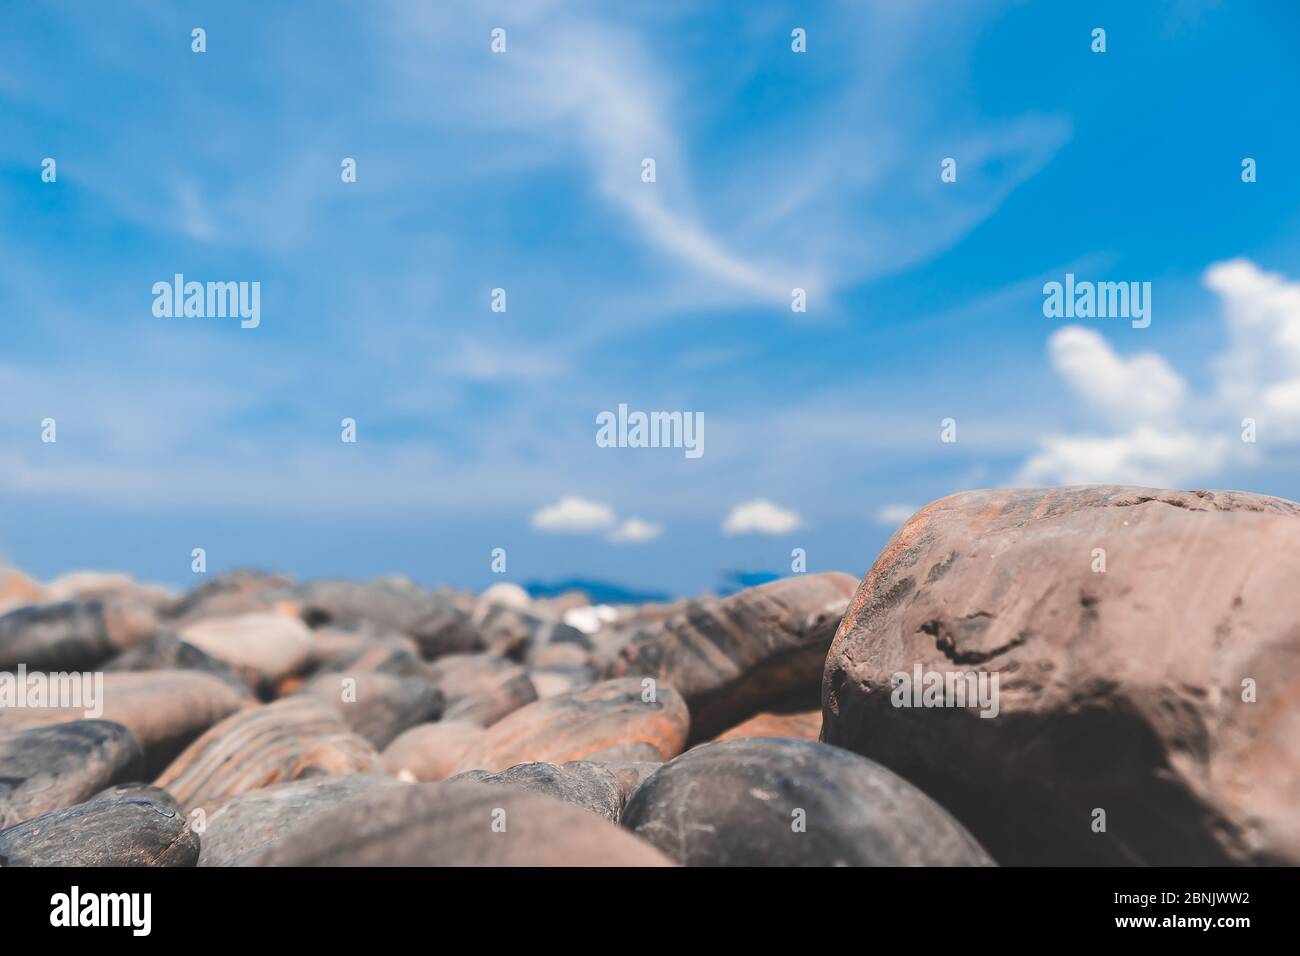 Playa de piedra sobre fondo azul cielo con poca profundidad de campo Foto de stock